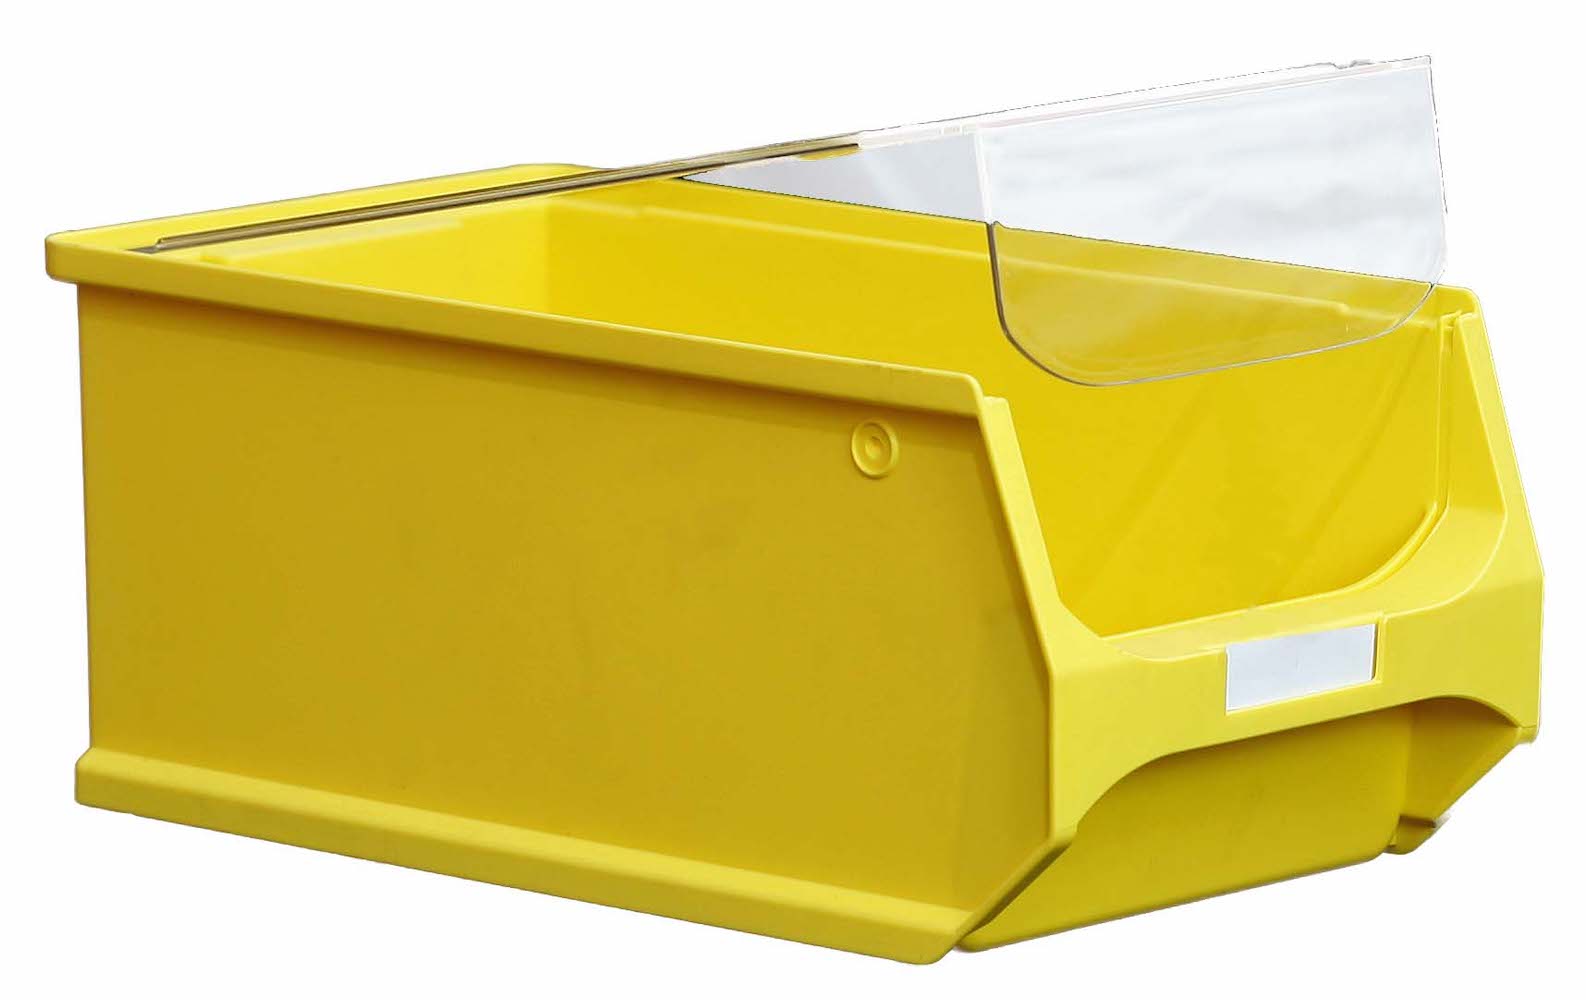 Staubdeckel 10x transparente Abdeckung für Sichtlagerbox 4.0 & 4.1 | HxBxT 0,3x19,2x31,5cm | Schmutzdeckel, Schutzdeckel, Sichtlagerbehälter, Sitchlagerkasten